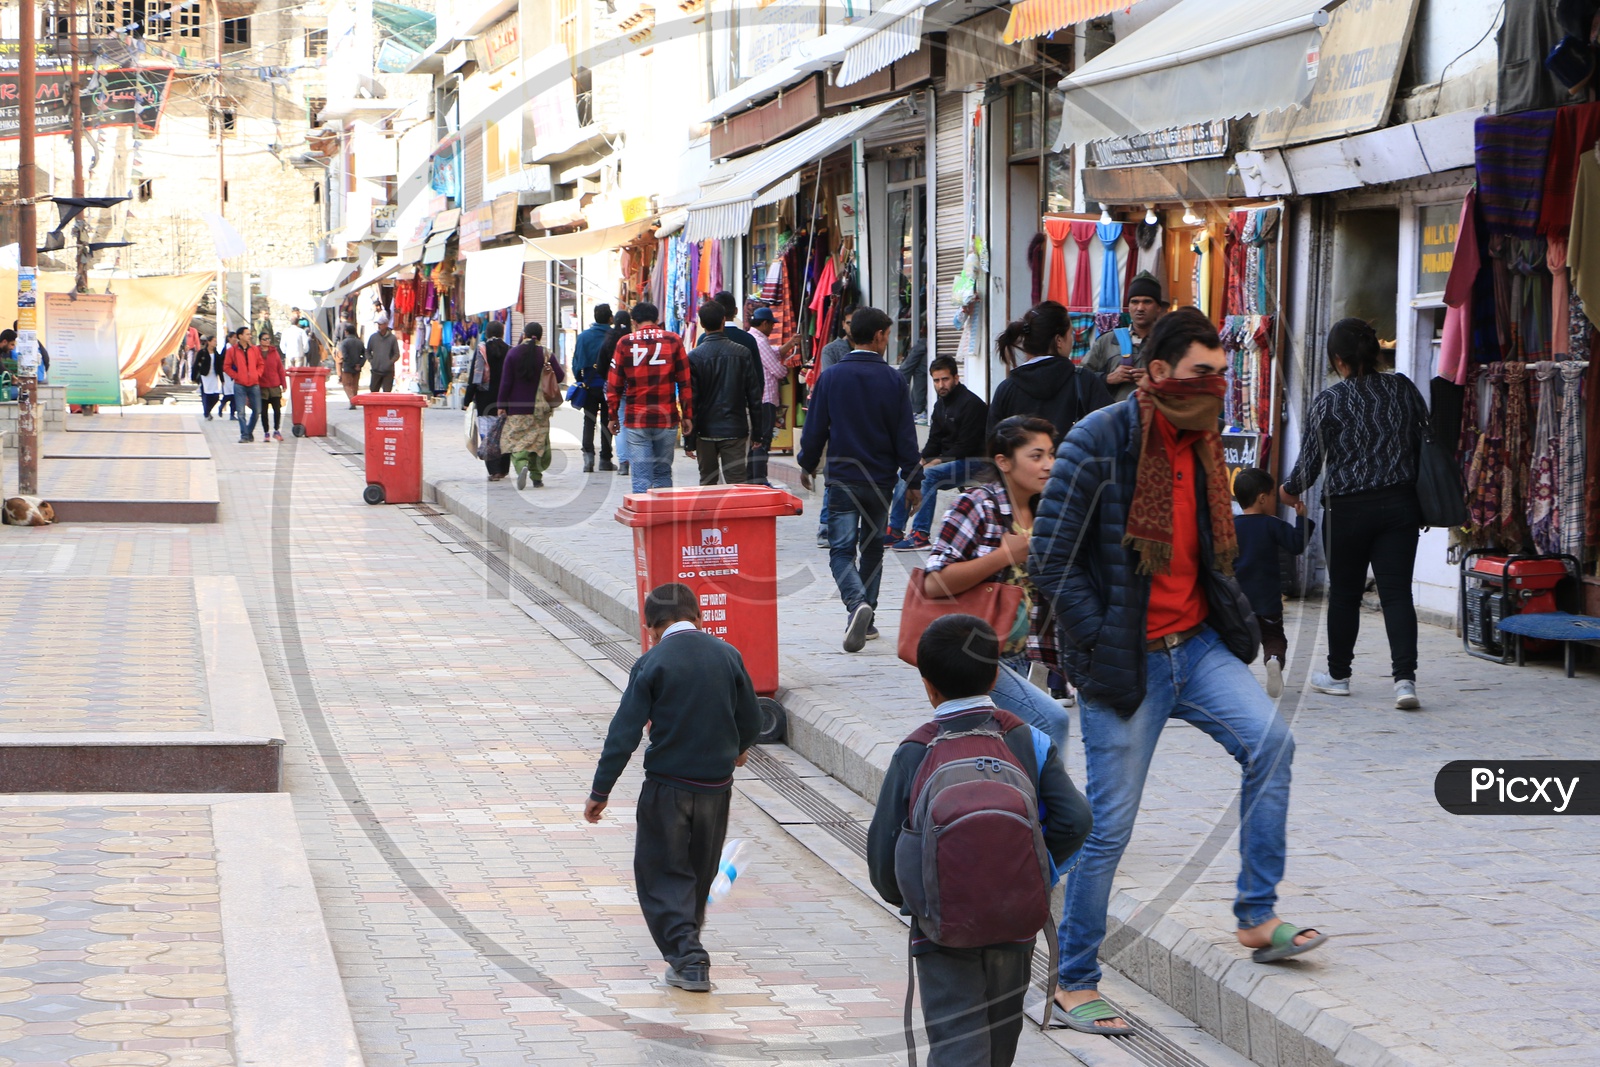 People walking in the streets of Leh